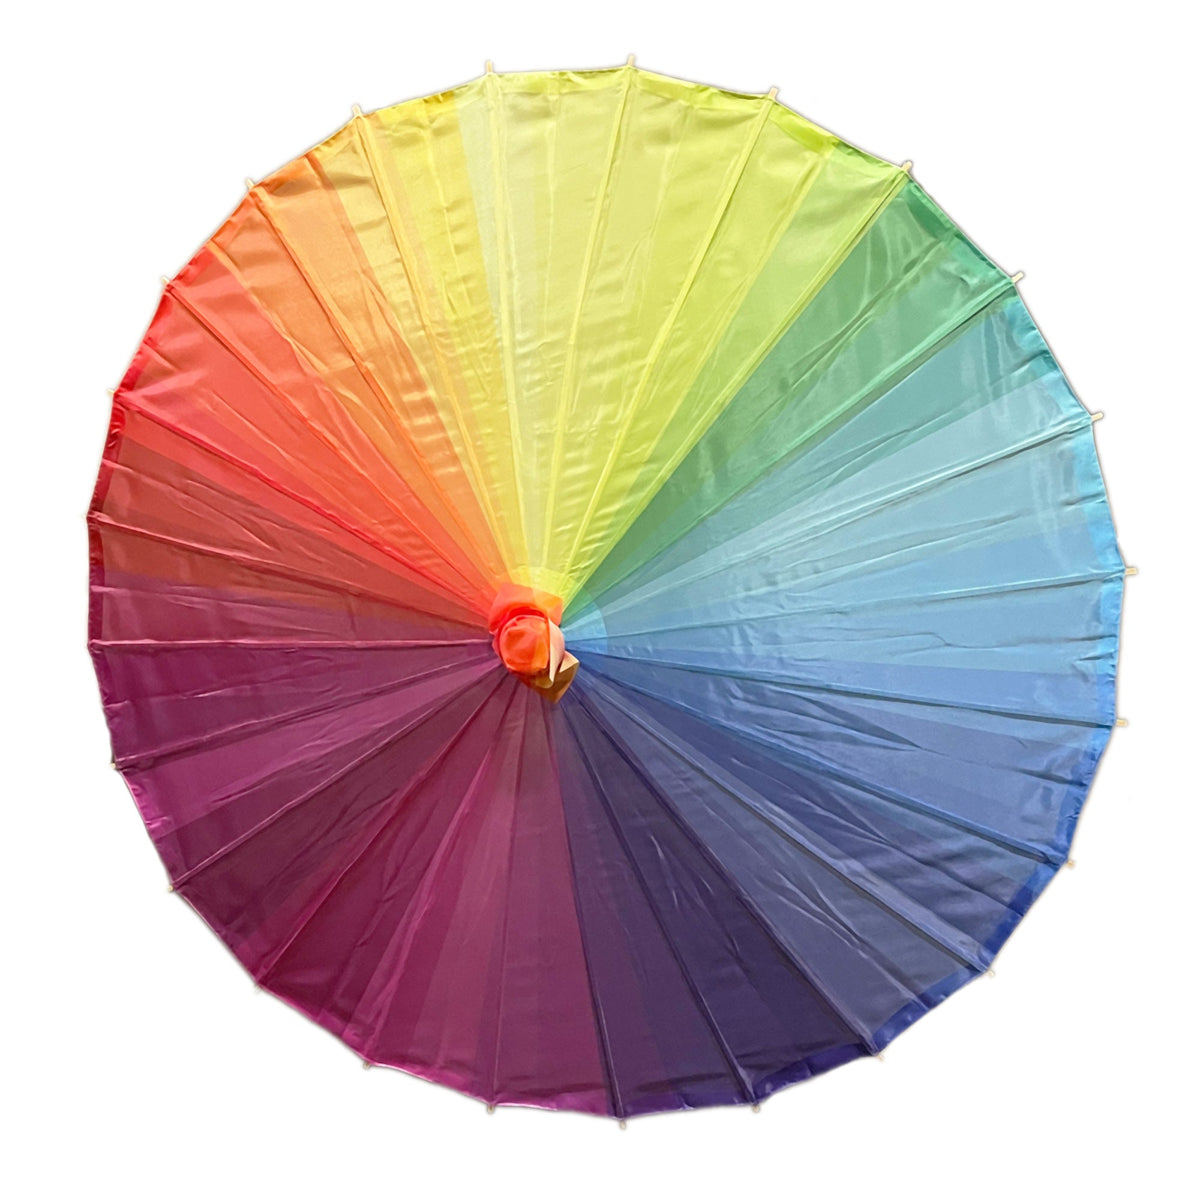 32" Rainbow Multi-Color Premium Nylon Parasol Umbrella with Elegant Handle